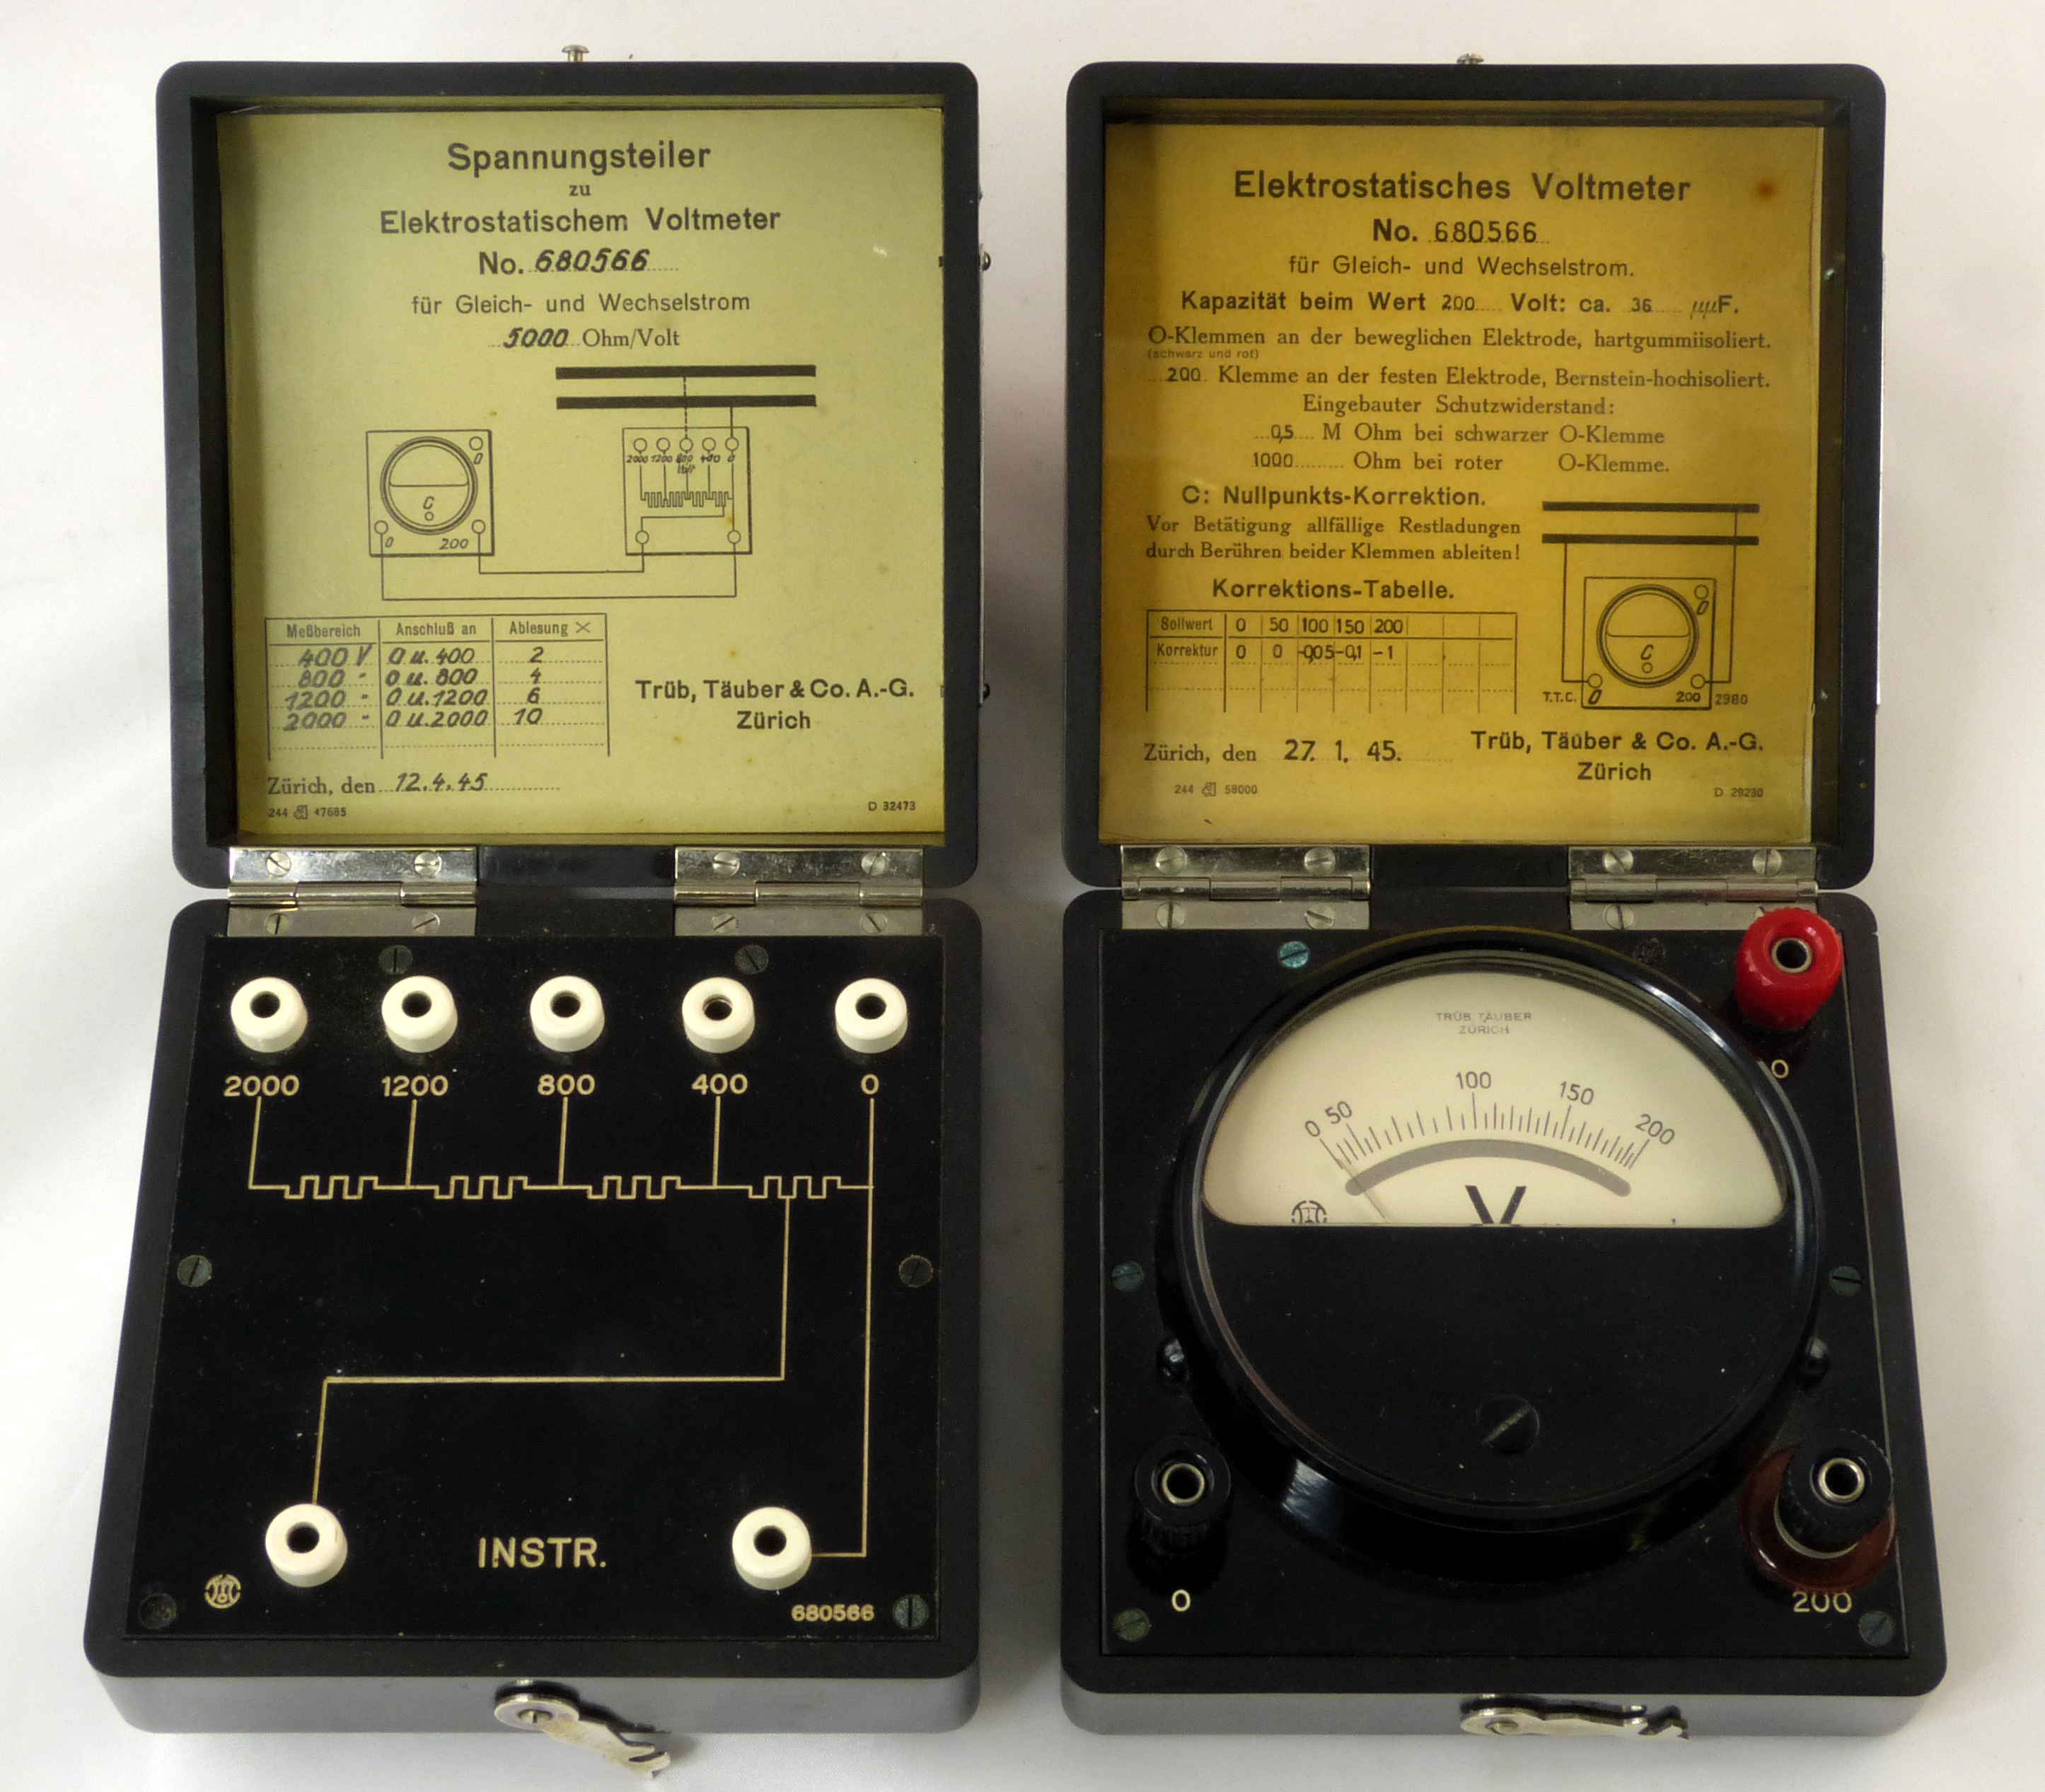 Voltmètres électrostatiques & diviseurs résistifs
(125 V et 200 V)